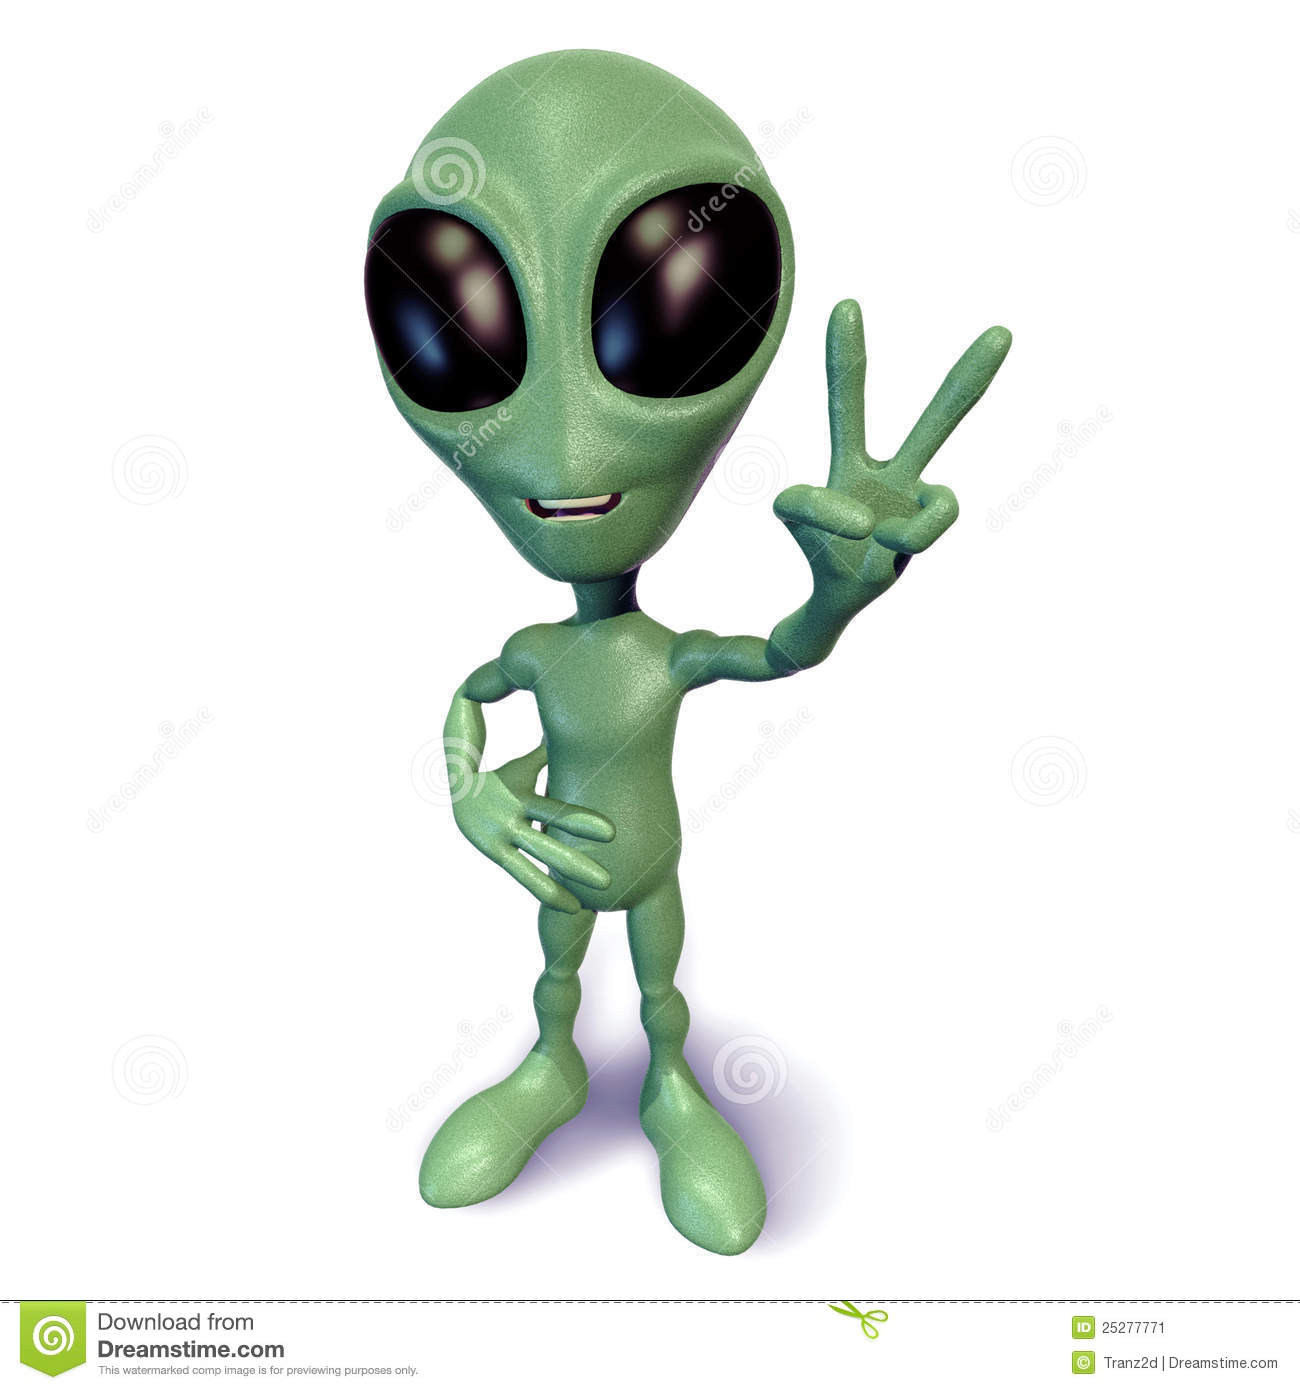 little-green-alien-gesturing-peace-25277771.jpg